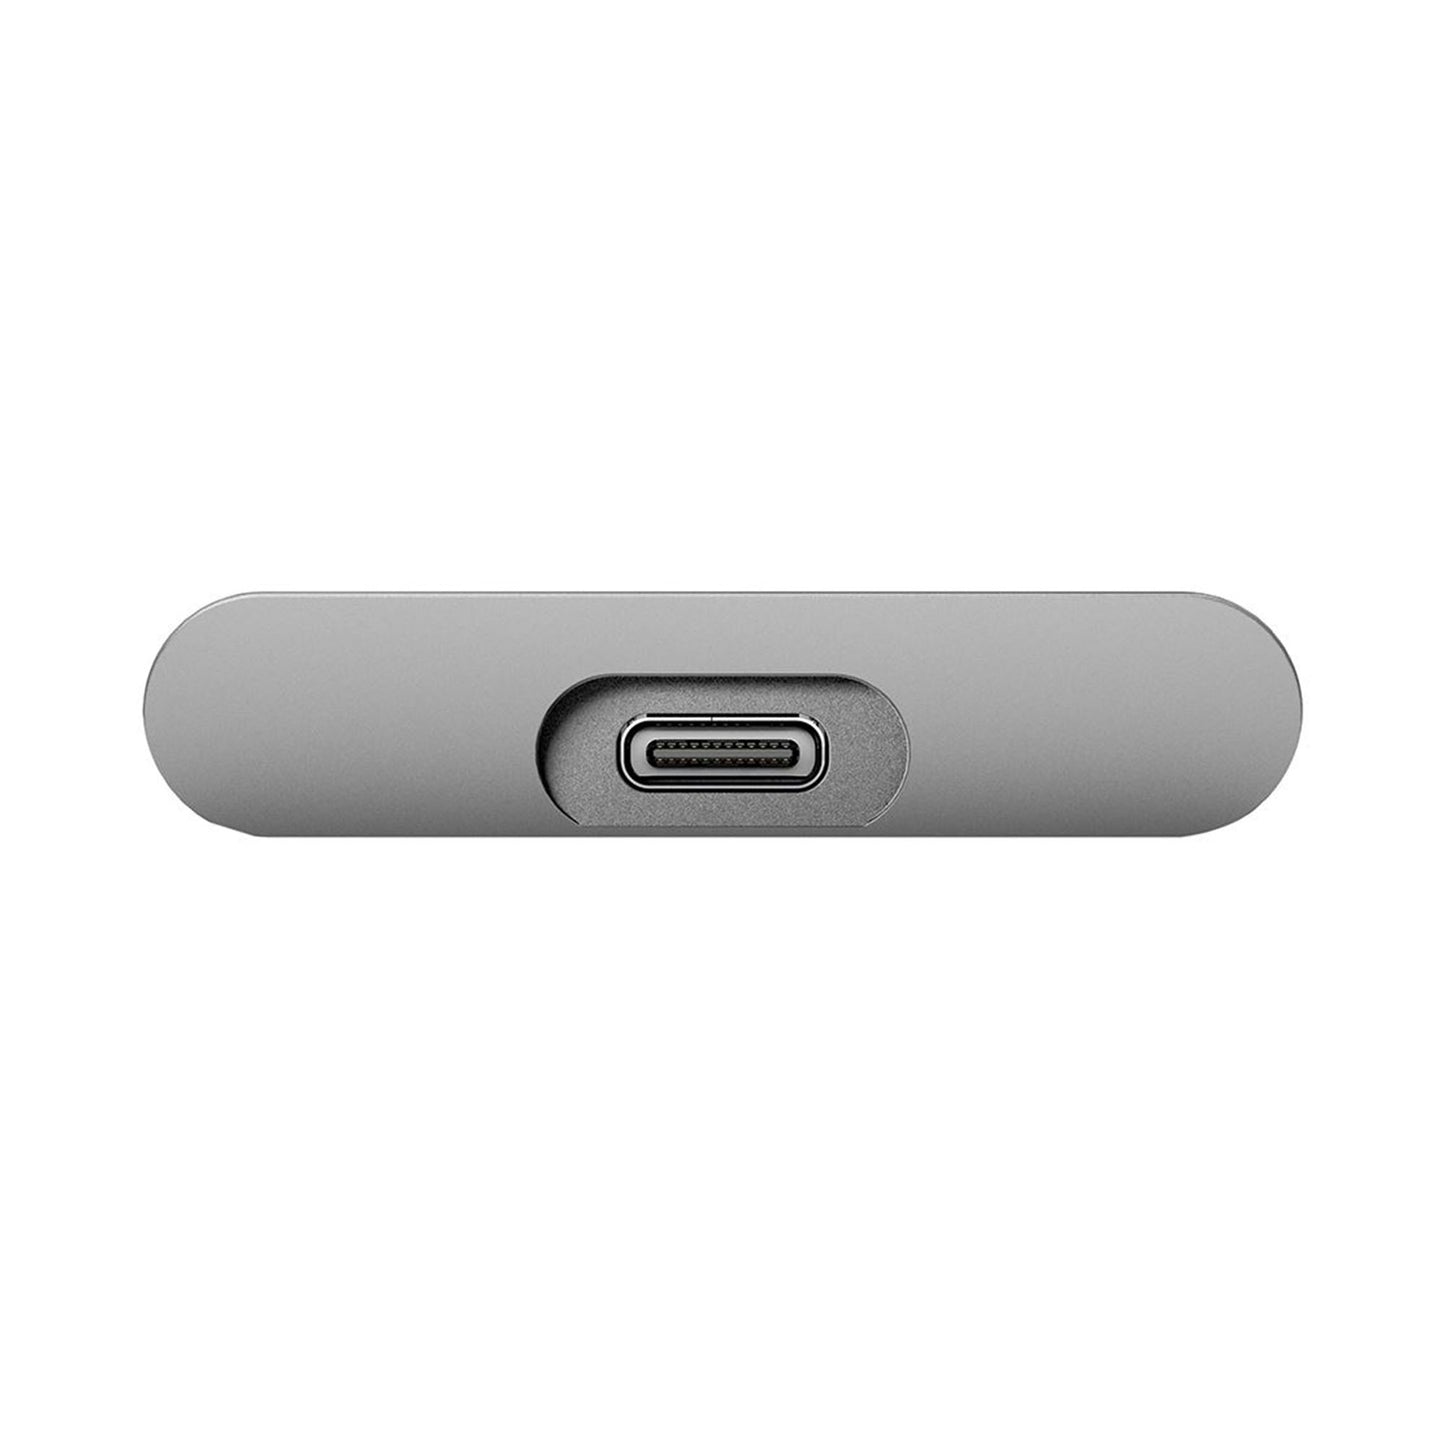 LACIE Portable SSD V2 USB 3.2 Type C 1TB - Silver